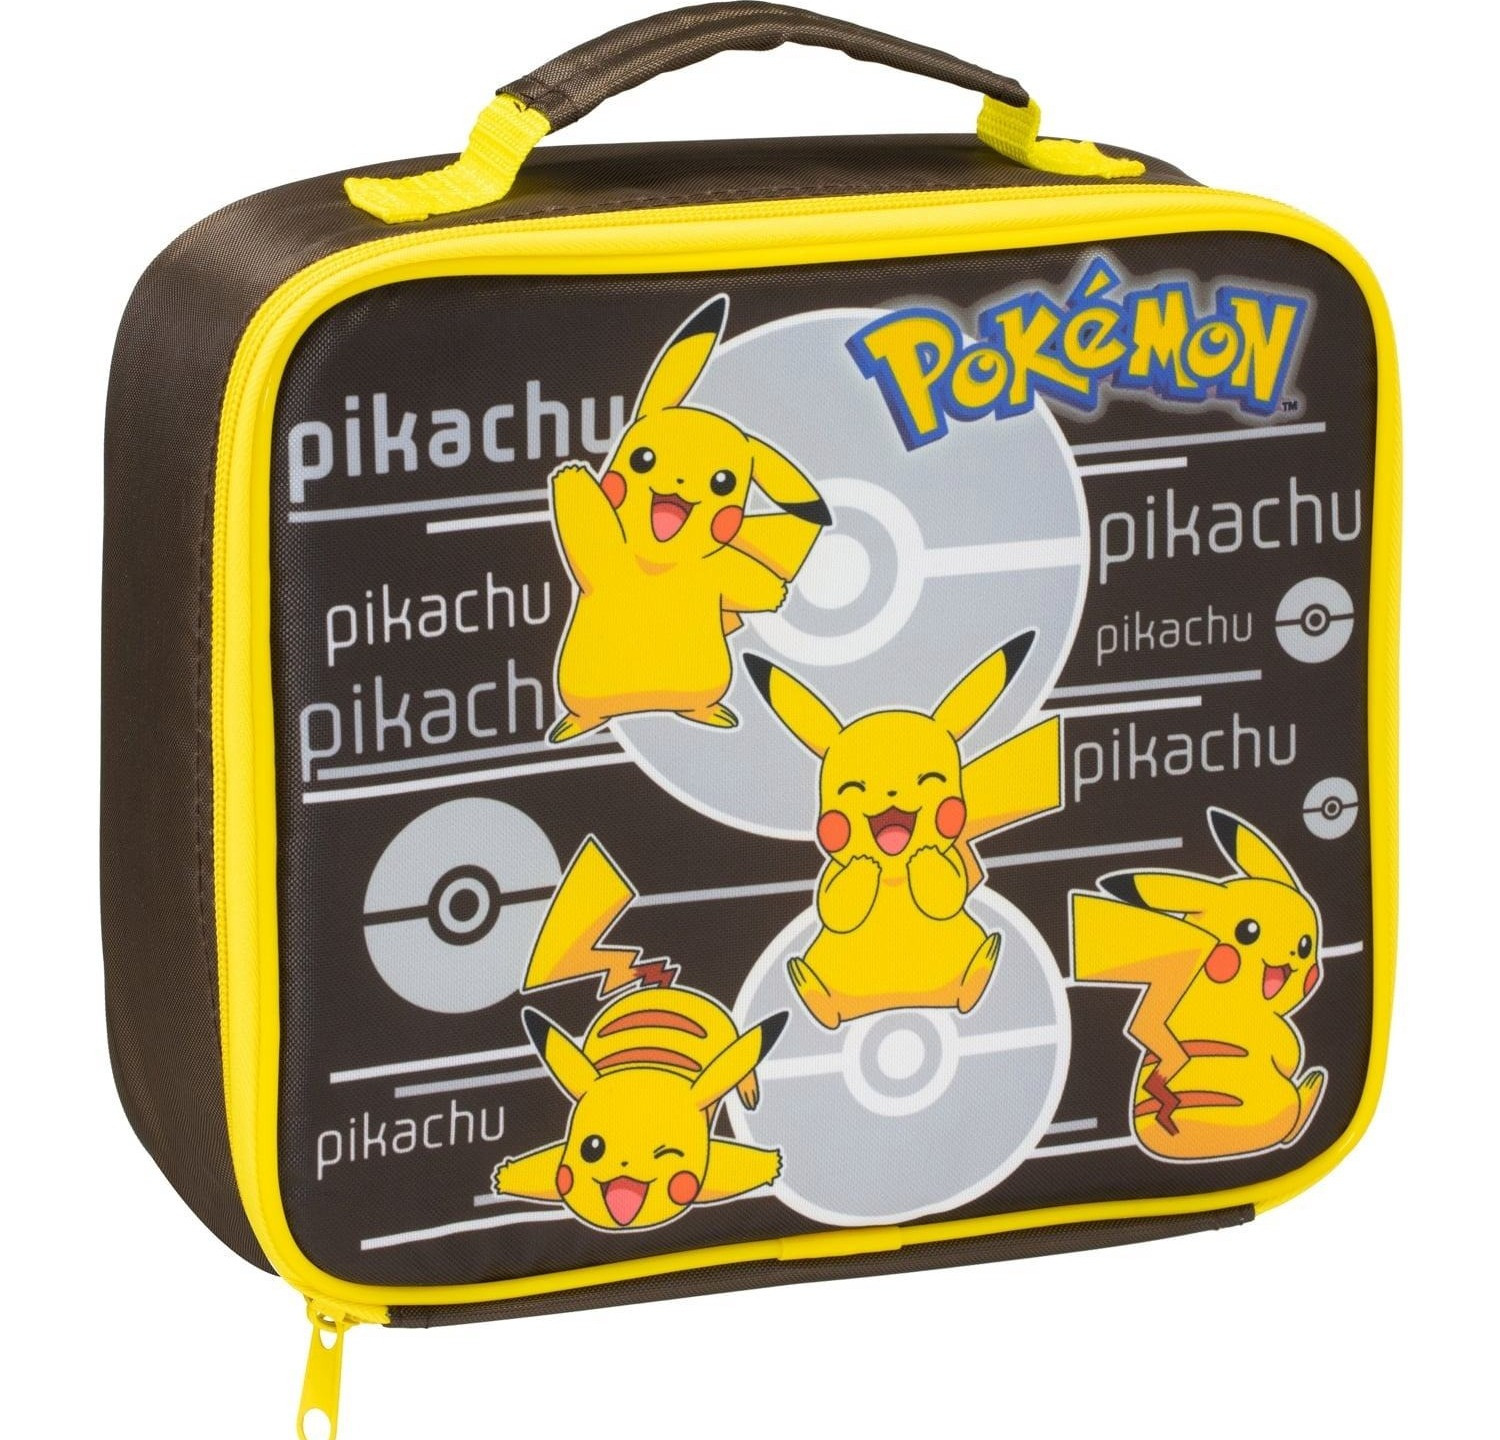 Pokemon Pikachu Lunch Bag - Ajándéktárgyak Ajándéktárgyak